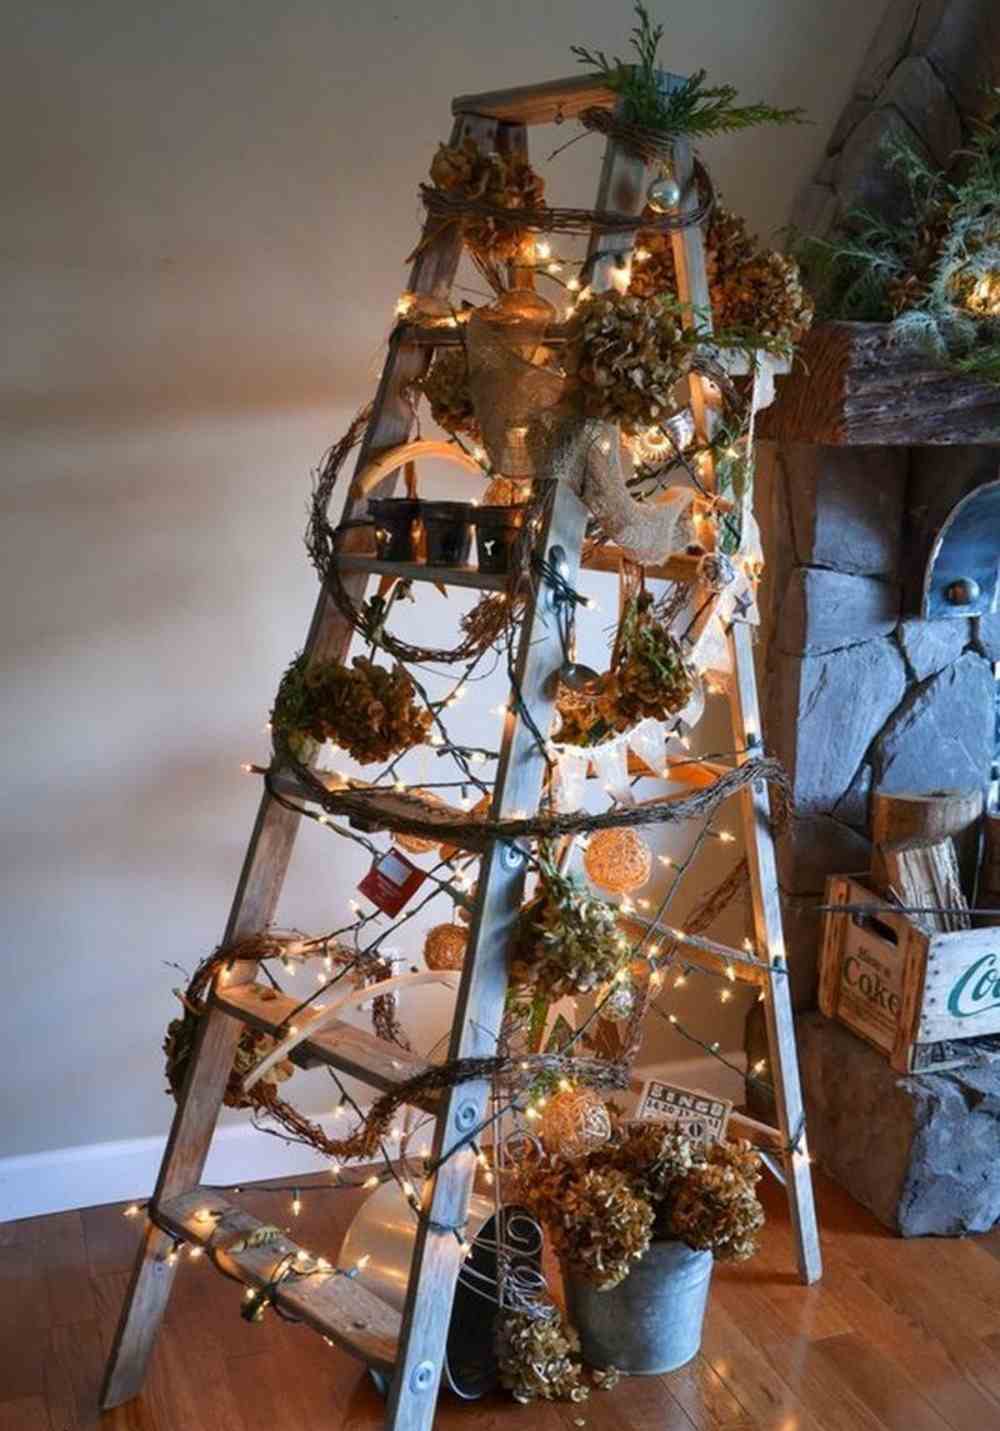 اصنع سلمًا كشجرة عيد الميلاد من الخشب وزينه بأكاليل وأضواء متسلسلة بالإضافة إلى مخاريط الصنوبر